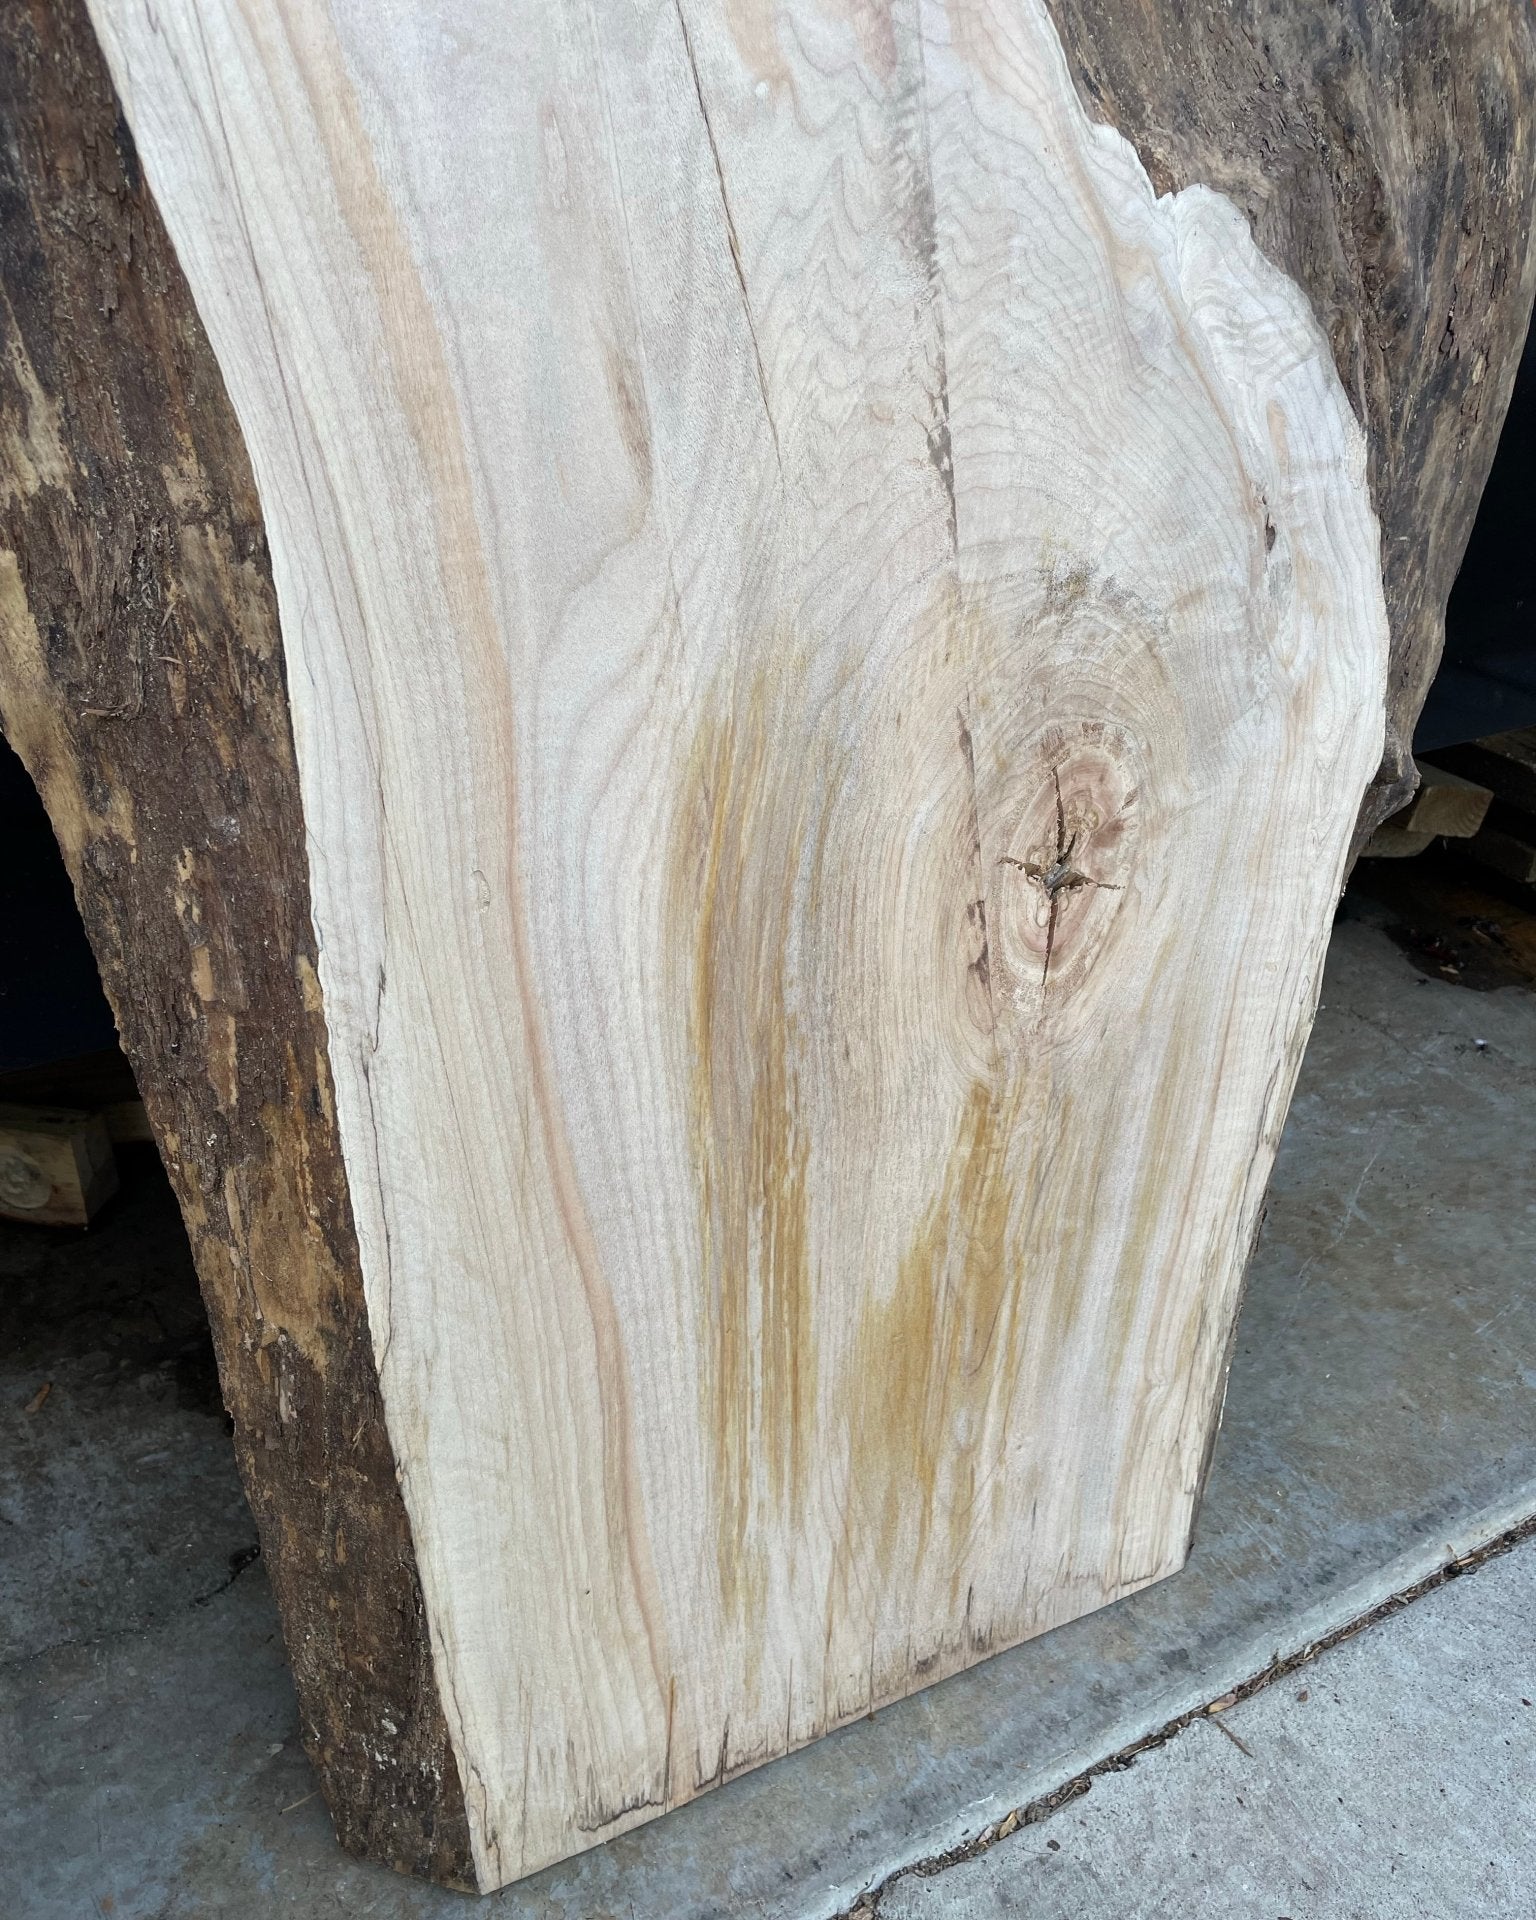 LiveEdge Big Leaf Maple | Craft Wood & Shapes | Hamilton Lee Supply